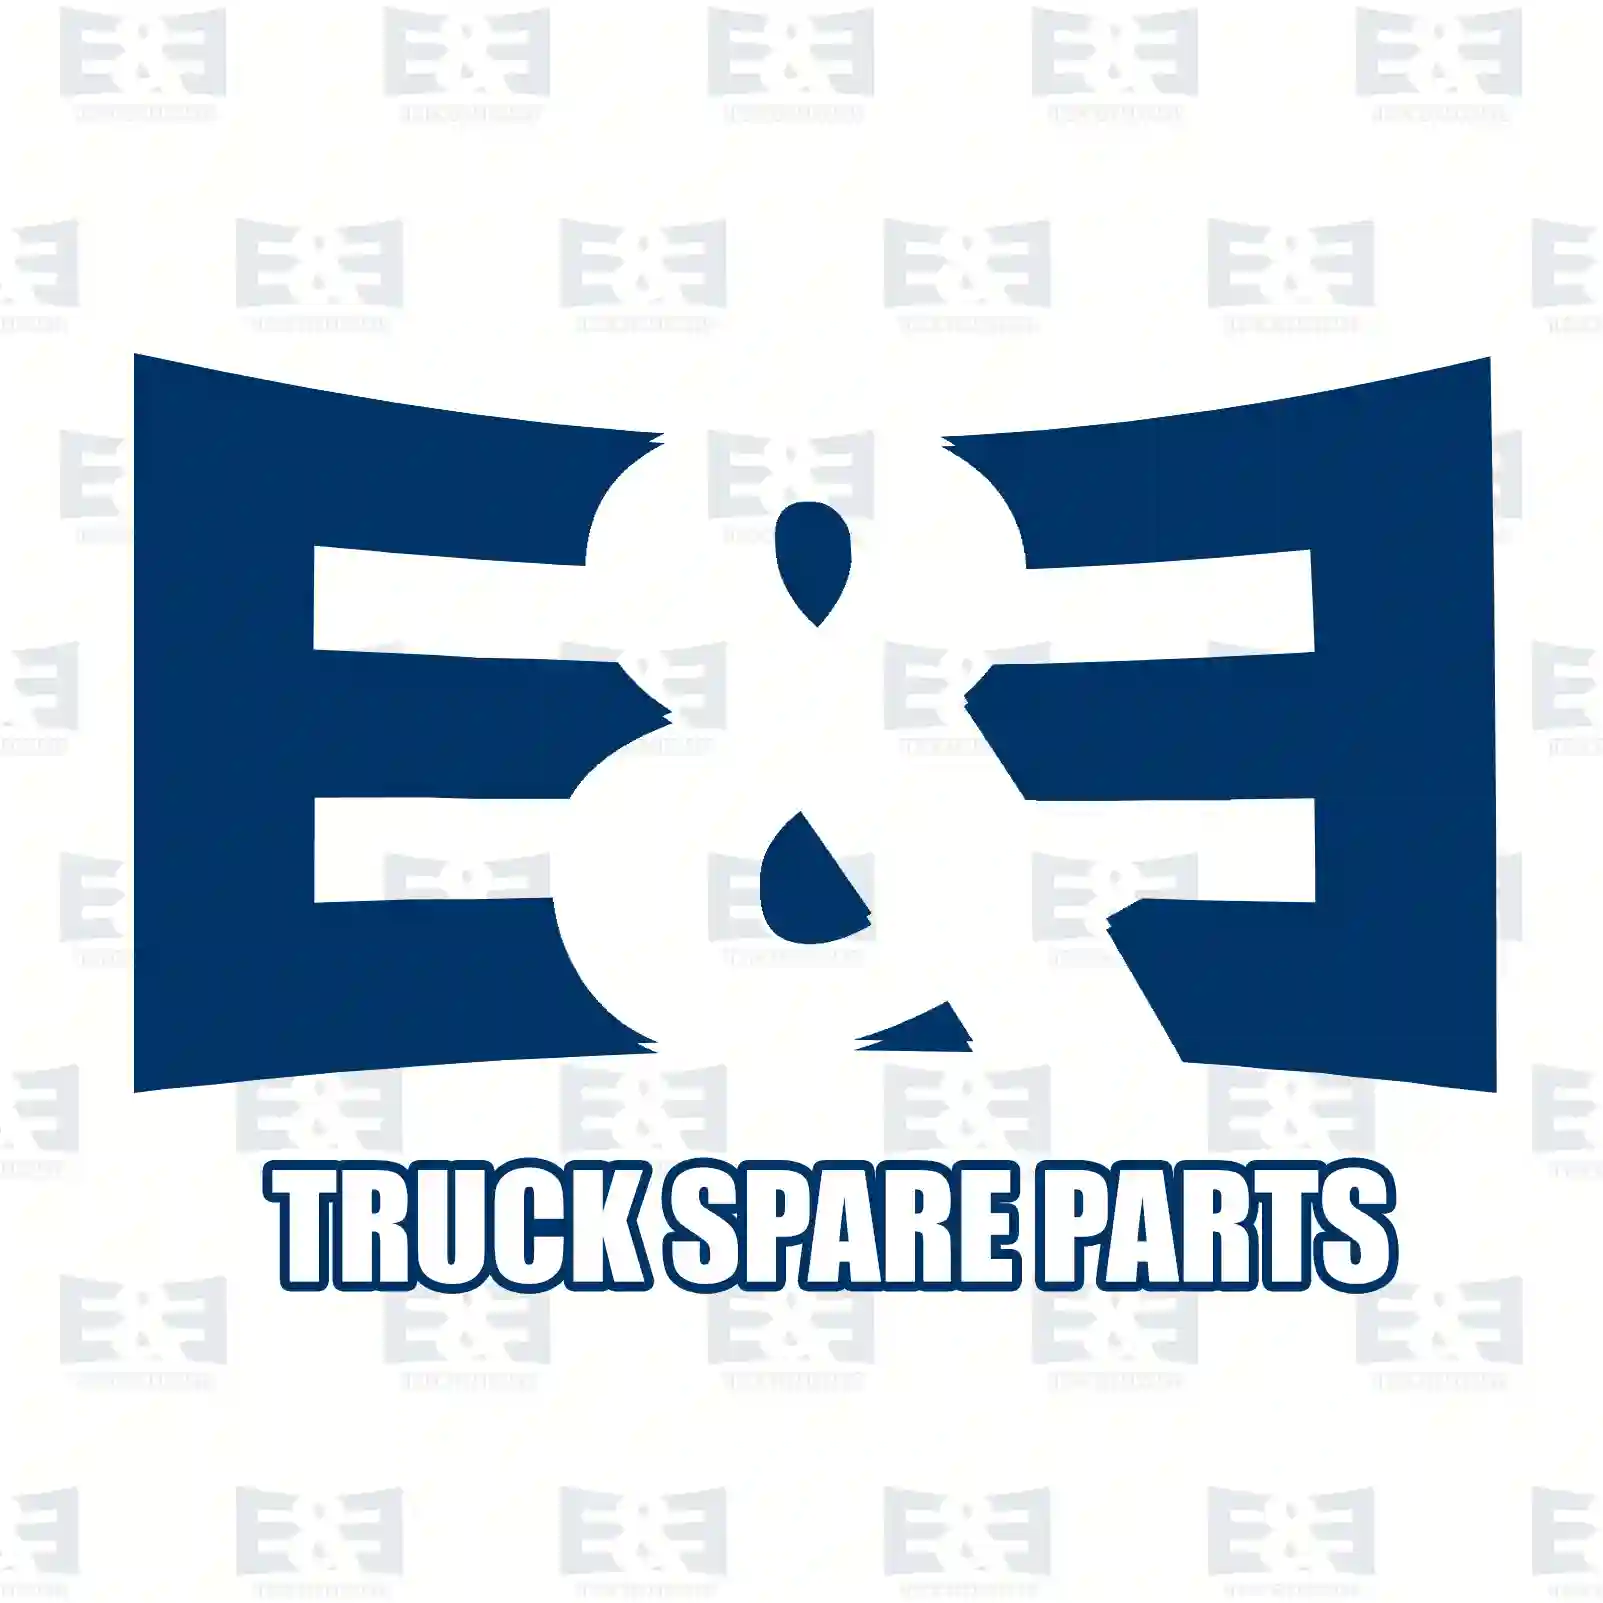 Fan with clutch, 2E2201755, 1676291, 3979988, 8113455 ||  2E2201755 E&E Truck Spare Parts | Truck Spare Parts, Auotomotive Spare Parts Fan with clutch, 2E2201755, 1676291, 3979988, 8113455 ||  2E2201755 E&E Truck Spare Parts | Truck Spare Parts, Auotomotive Spare Parts